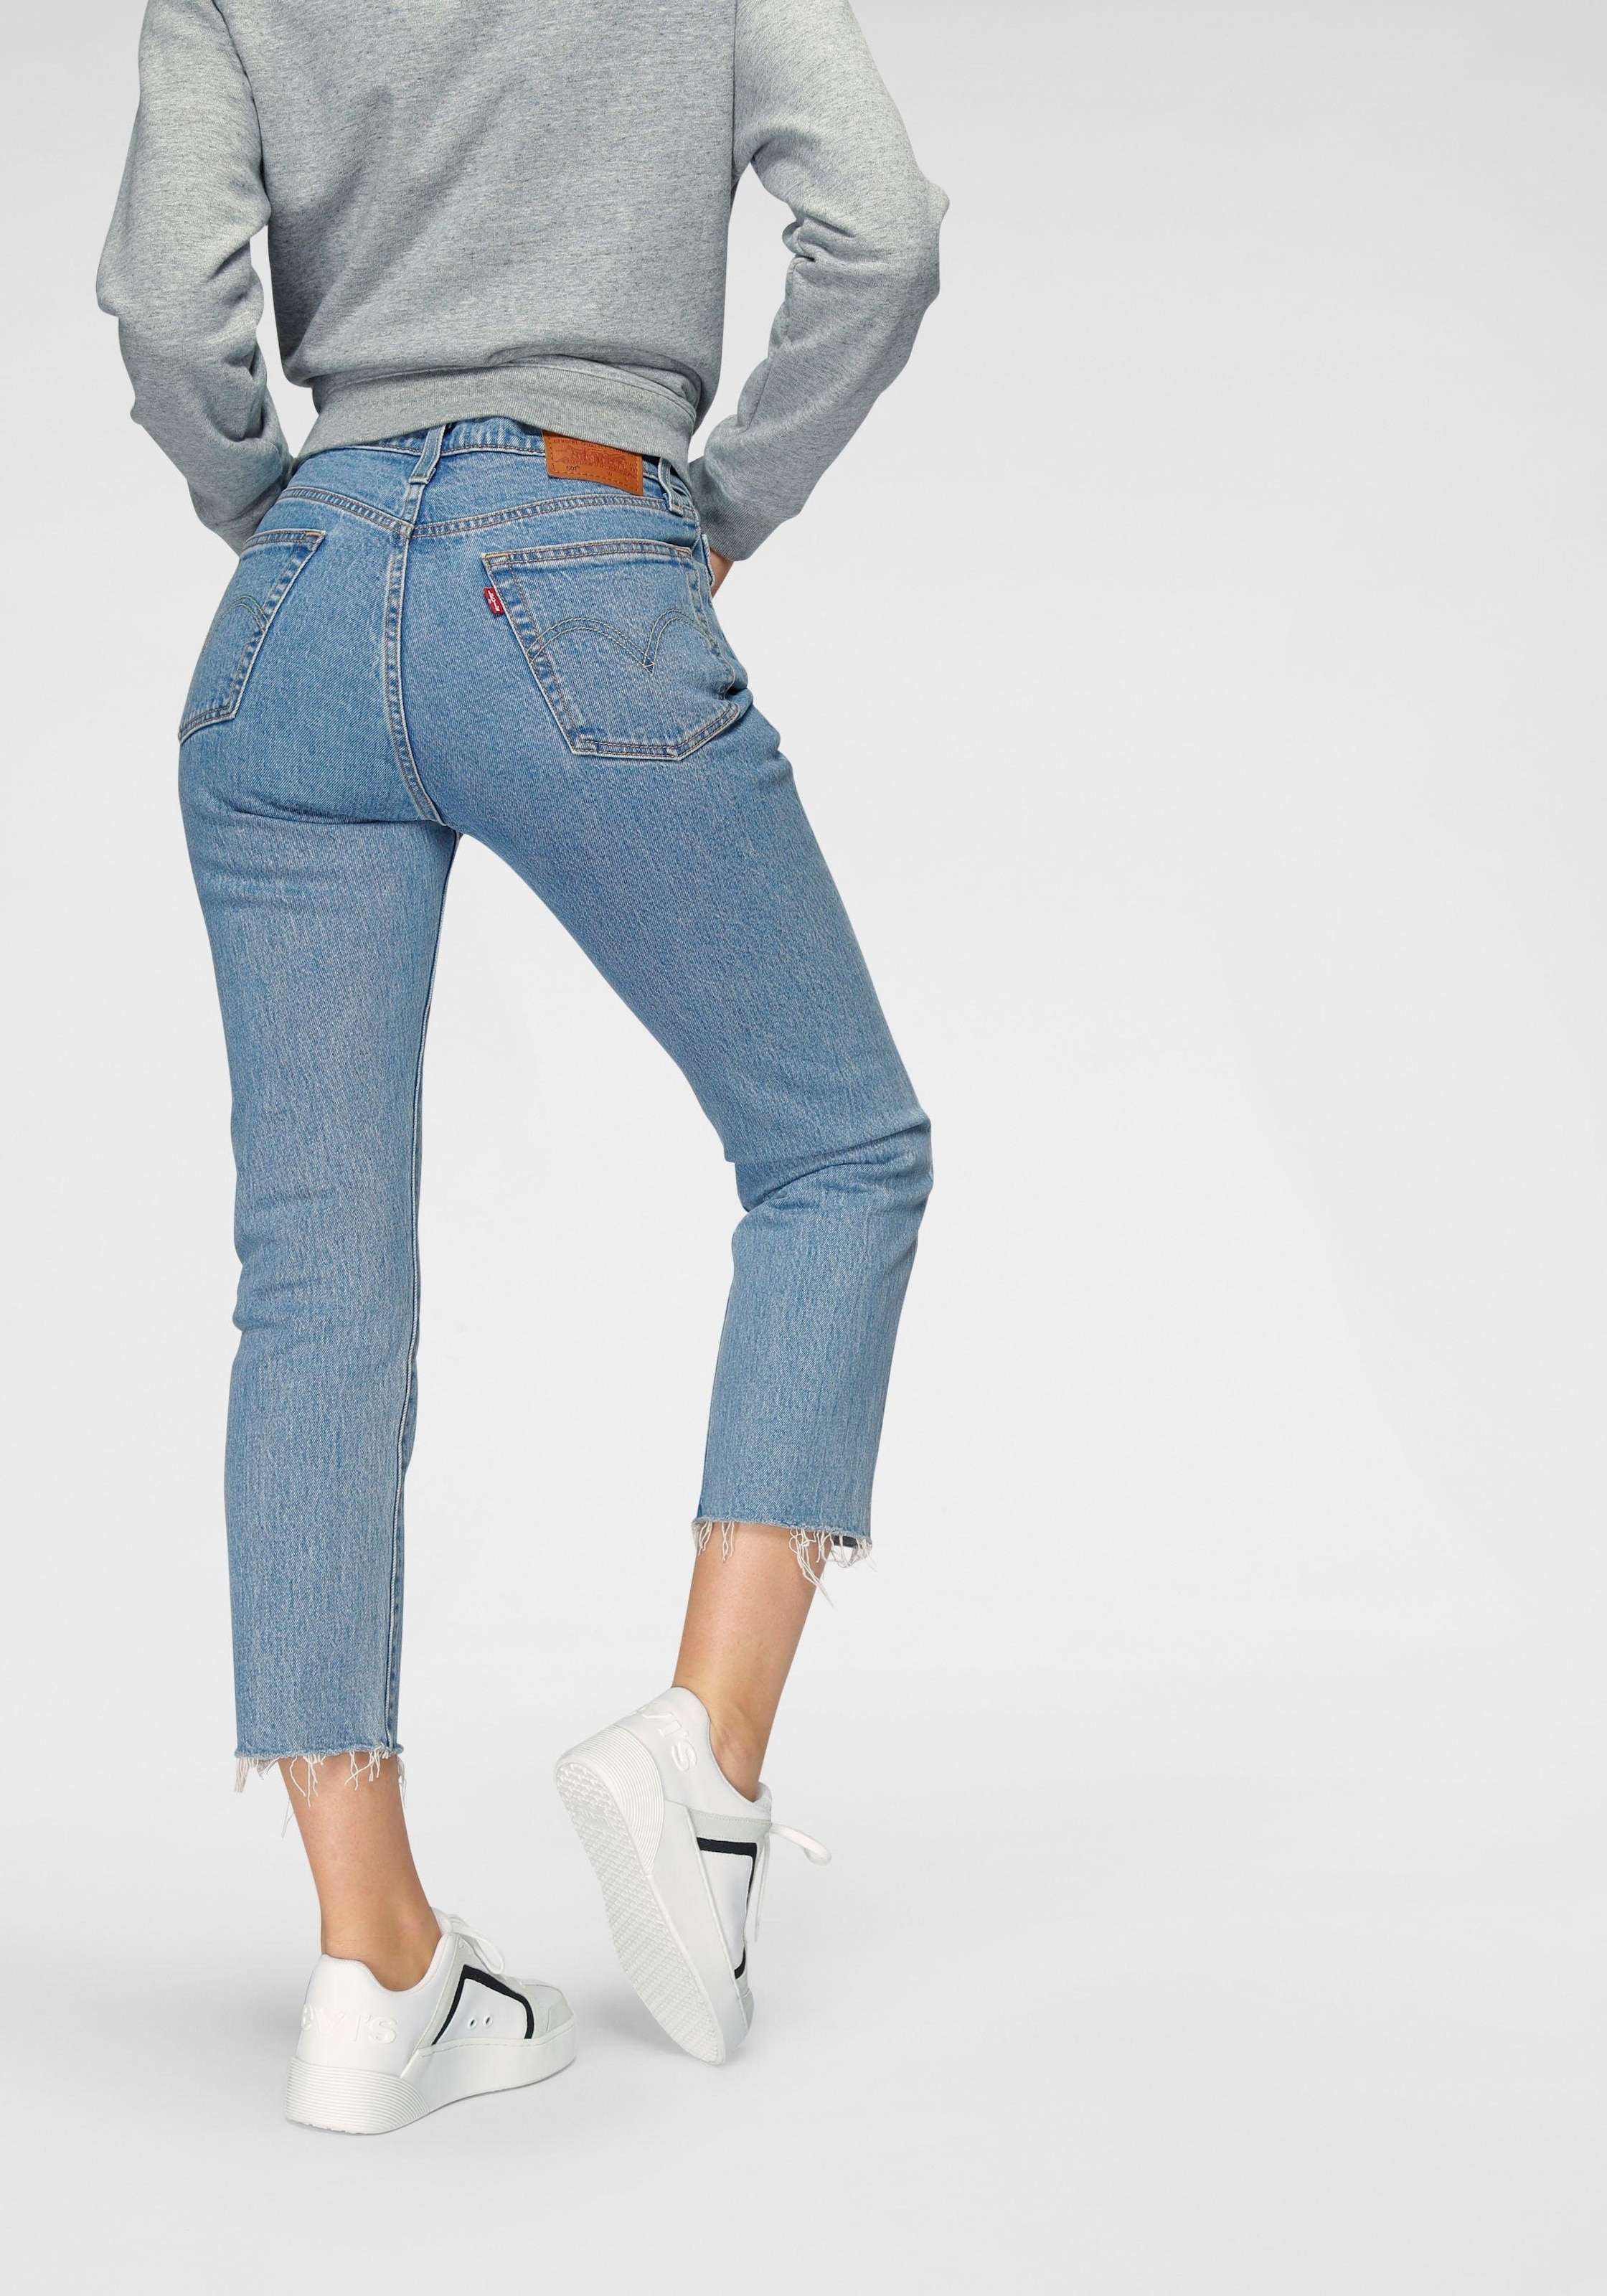 Jeans Fur Damen In 7 8 Lange Online Kaufen 7 8 Jeans Bei Otto